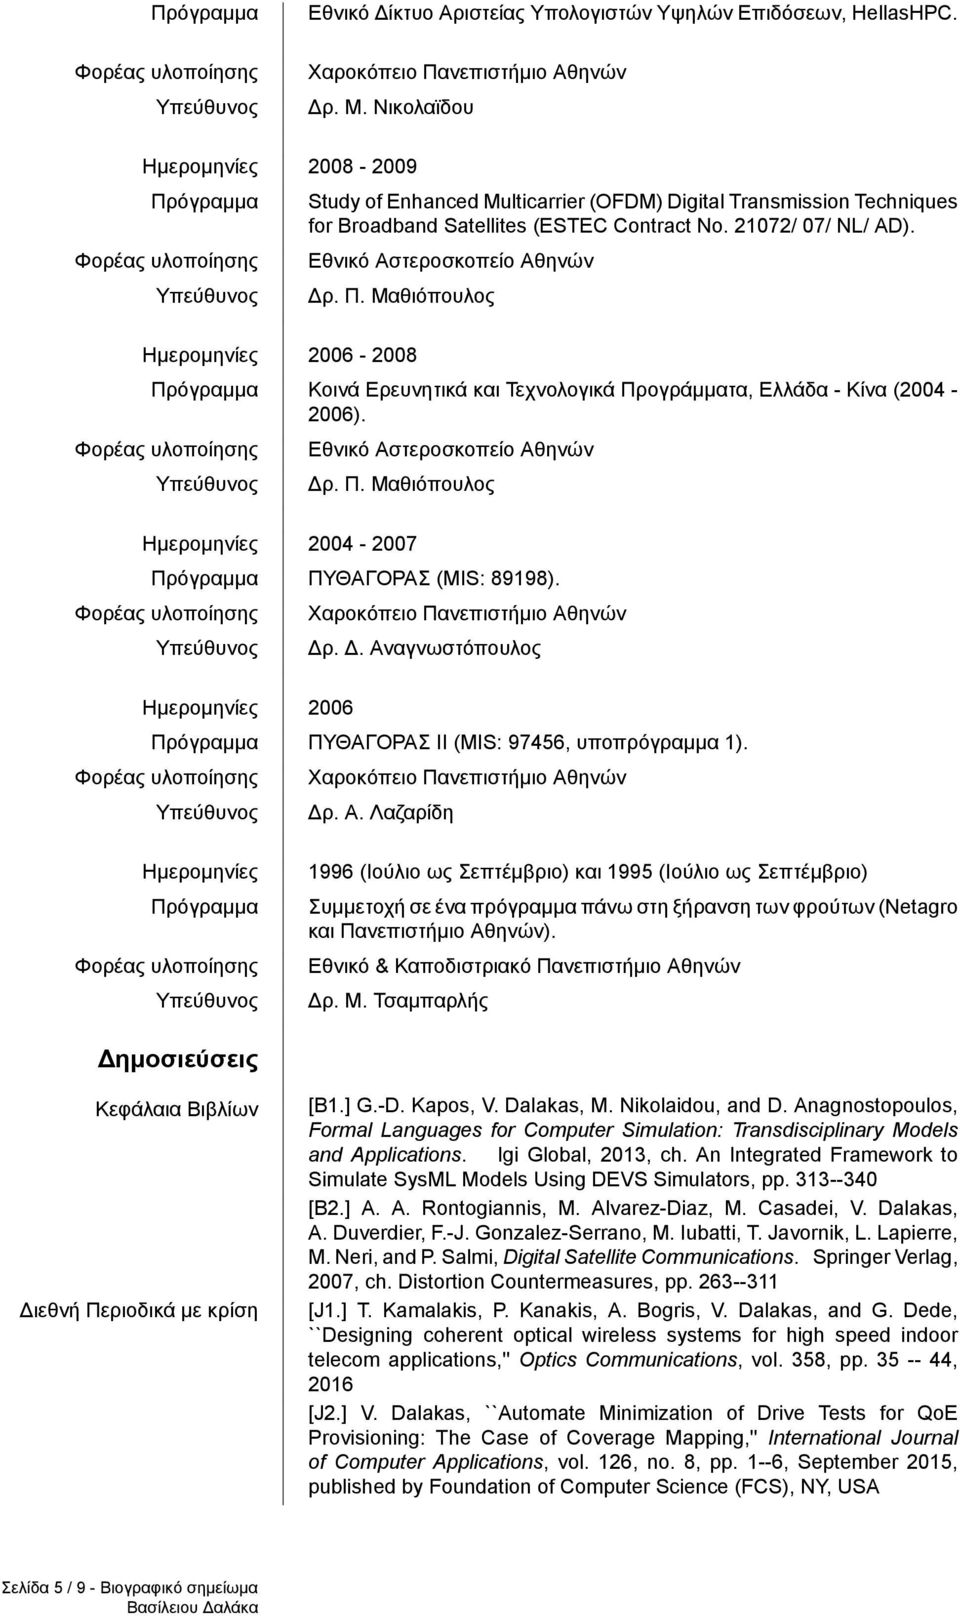 Εθνικό Αστεροσκοπείο Αθηνών Δρ. Π. Μαθιόπουλος 2004-2007 Πρόγραμμα ΠΥΘΑΓΟΡΑΣ (MIS: 89198). Δρ. Δ. Αναγνωστόπουλος 2006 Πρόγραμμα ΠΥΘΑΓΟΡΑΣ ΙΙ (MIS: 97456, υποπρόγραμμα 1). Δρ. Α. Λαζαρίδη Πρόγραμμα 1996 (Ιούλιο ως Σεπτέμβριο) και 1995 (Ιούλιο ως Σεπτέμβριο) Συμμετοχή σε ένα πρόγραμμα πάνω στη ξήρανση των φρούτων (Netagro και Πανεπιστήμιο Αθηνών).